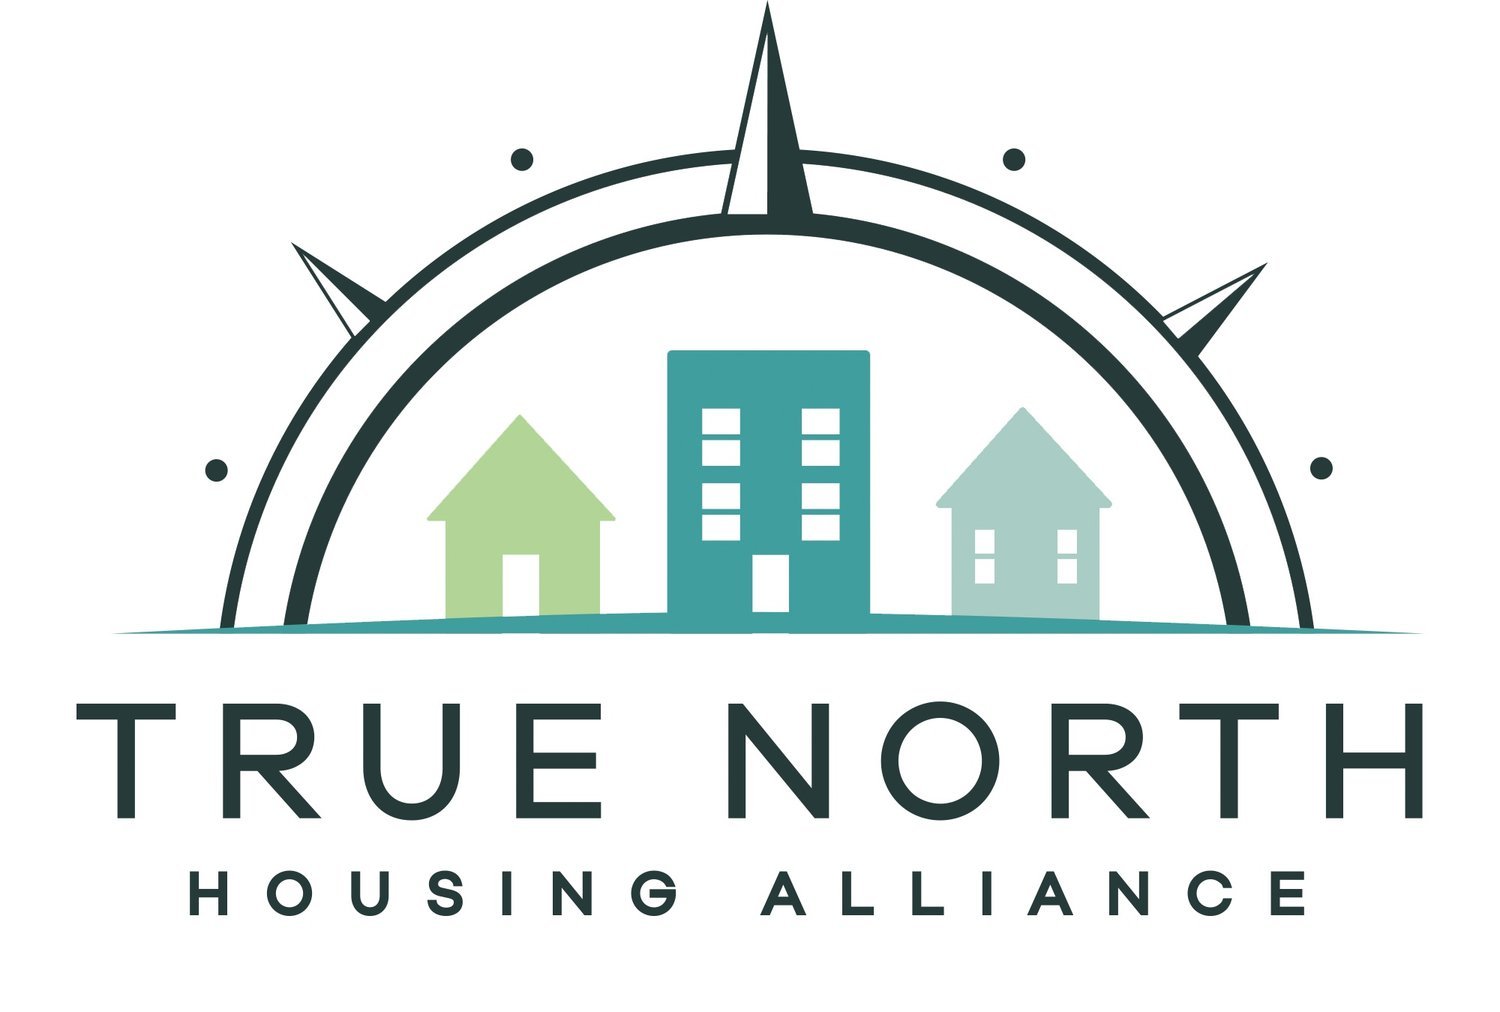 True North Housing Alliance